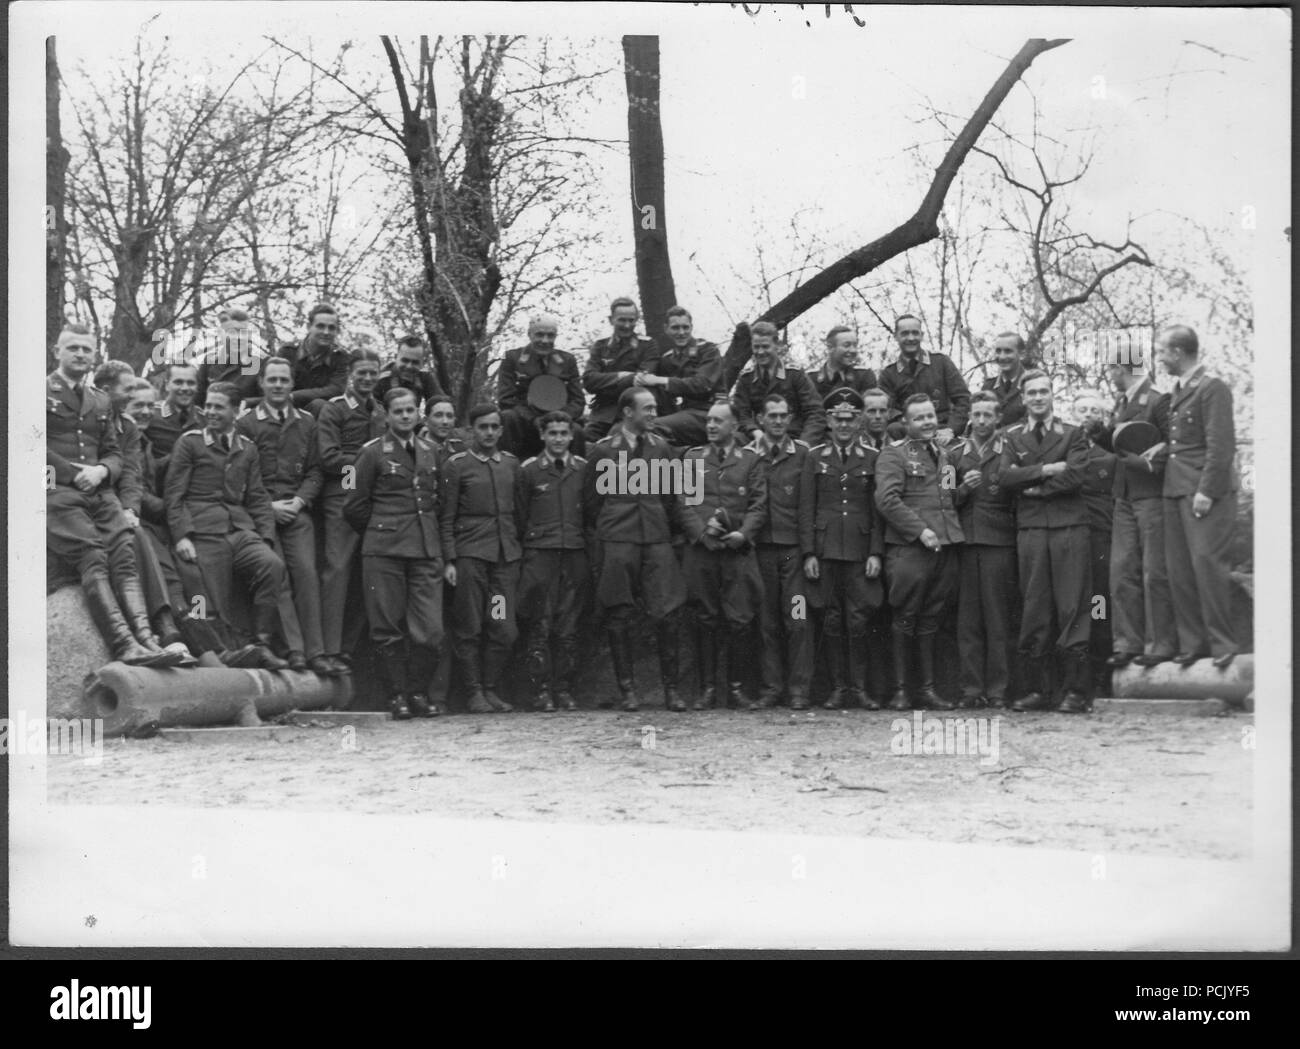 Image à partir d'un album de photos relatives à II. Gruppe, Jagdgeschwader 3 : certains des officiers et sous-officiers de II.Gruppe, Jagdgeschwader 3 pose devant l'appareil photo à l'été 1940. Les équipages et le personnel au sol semblent être présentes dans cette image. Banque D'Images